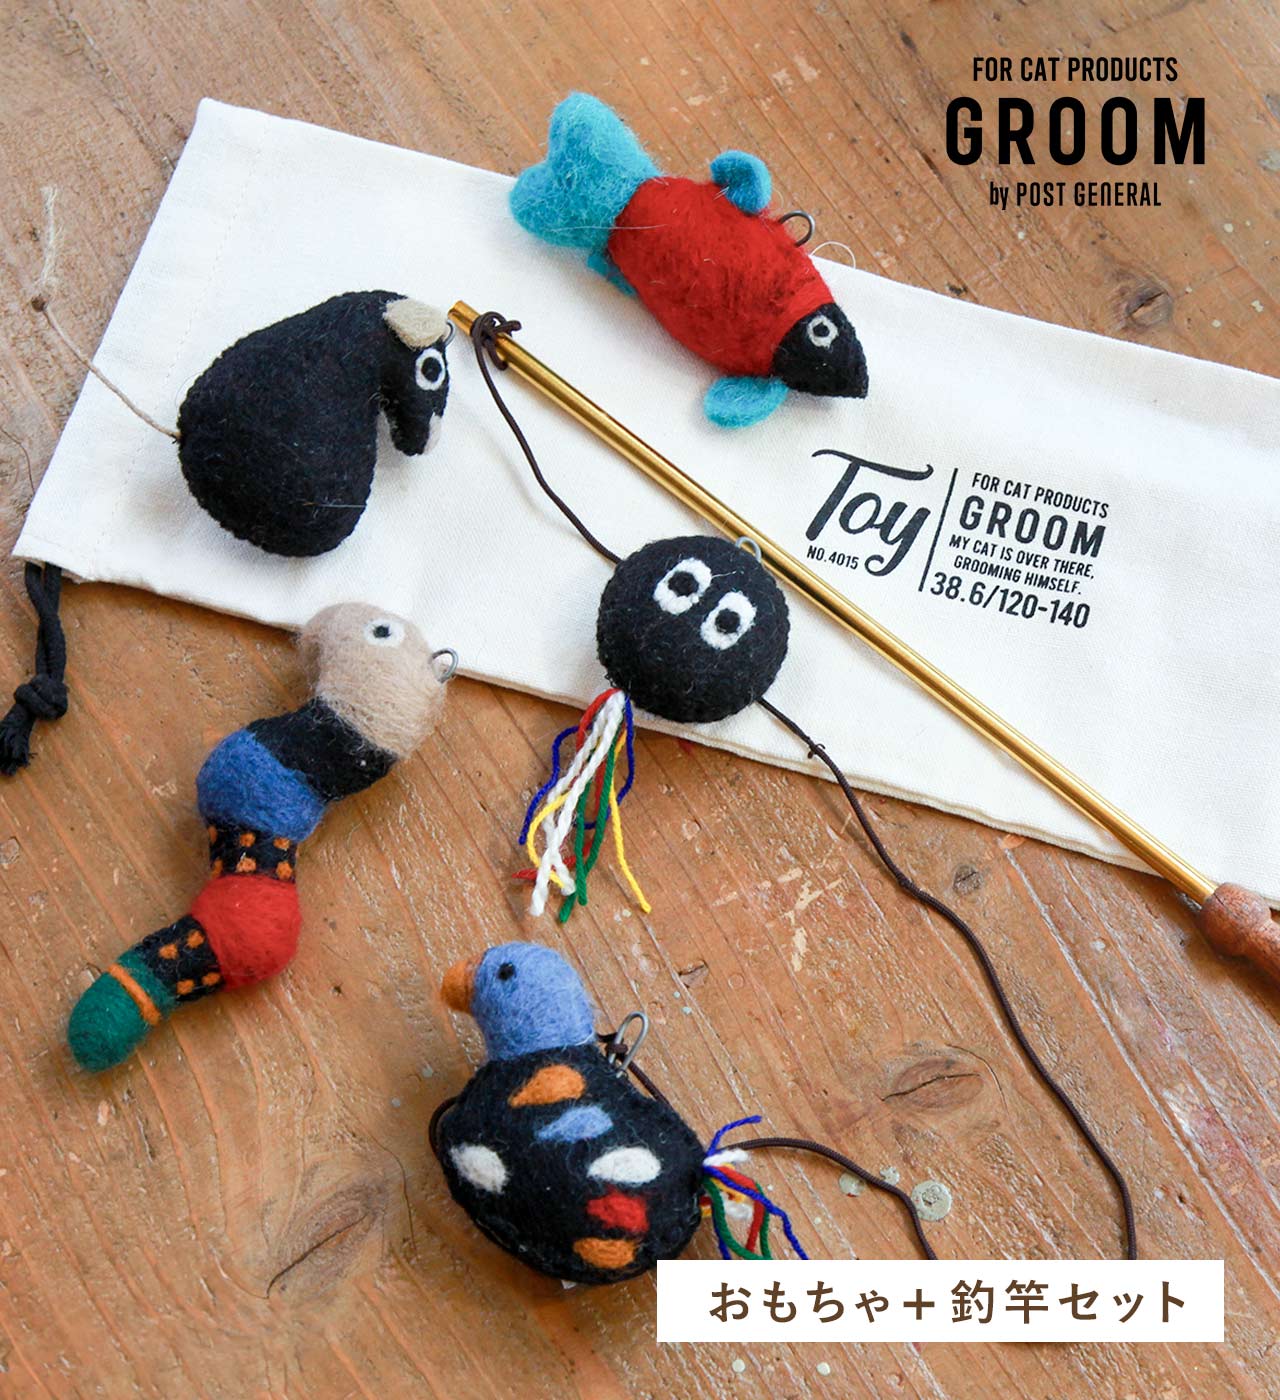 【GROOM】おもちゃ ねこじゃらし 釣竿セット (5タイプ) GROOM / グルーム